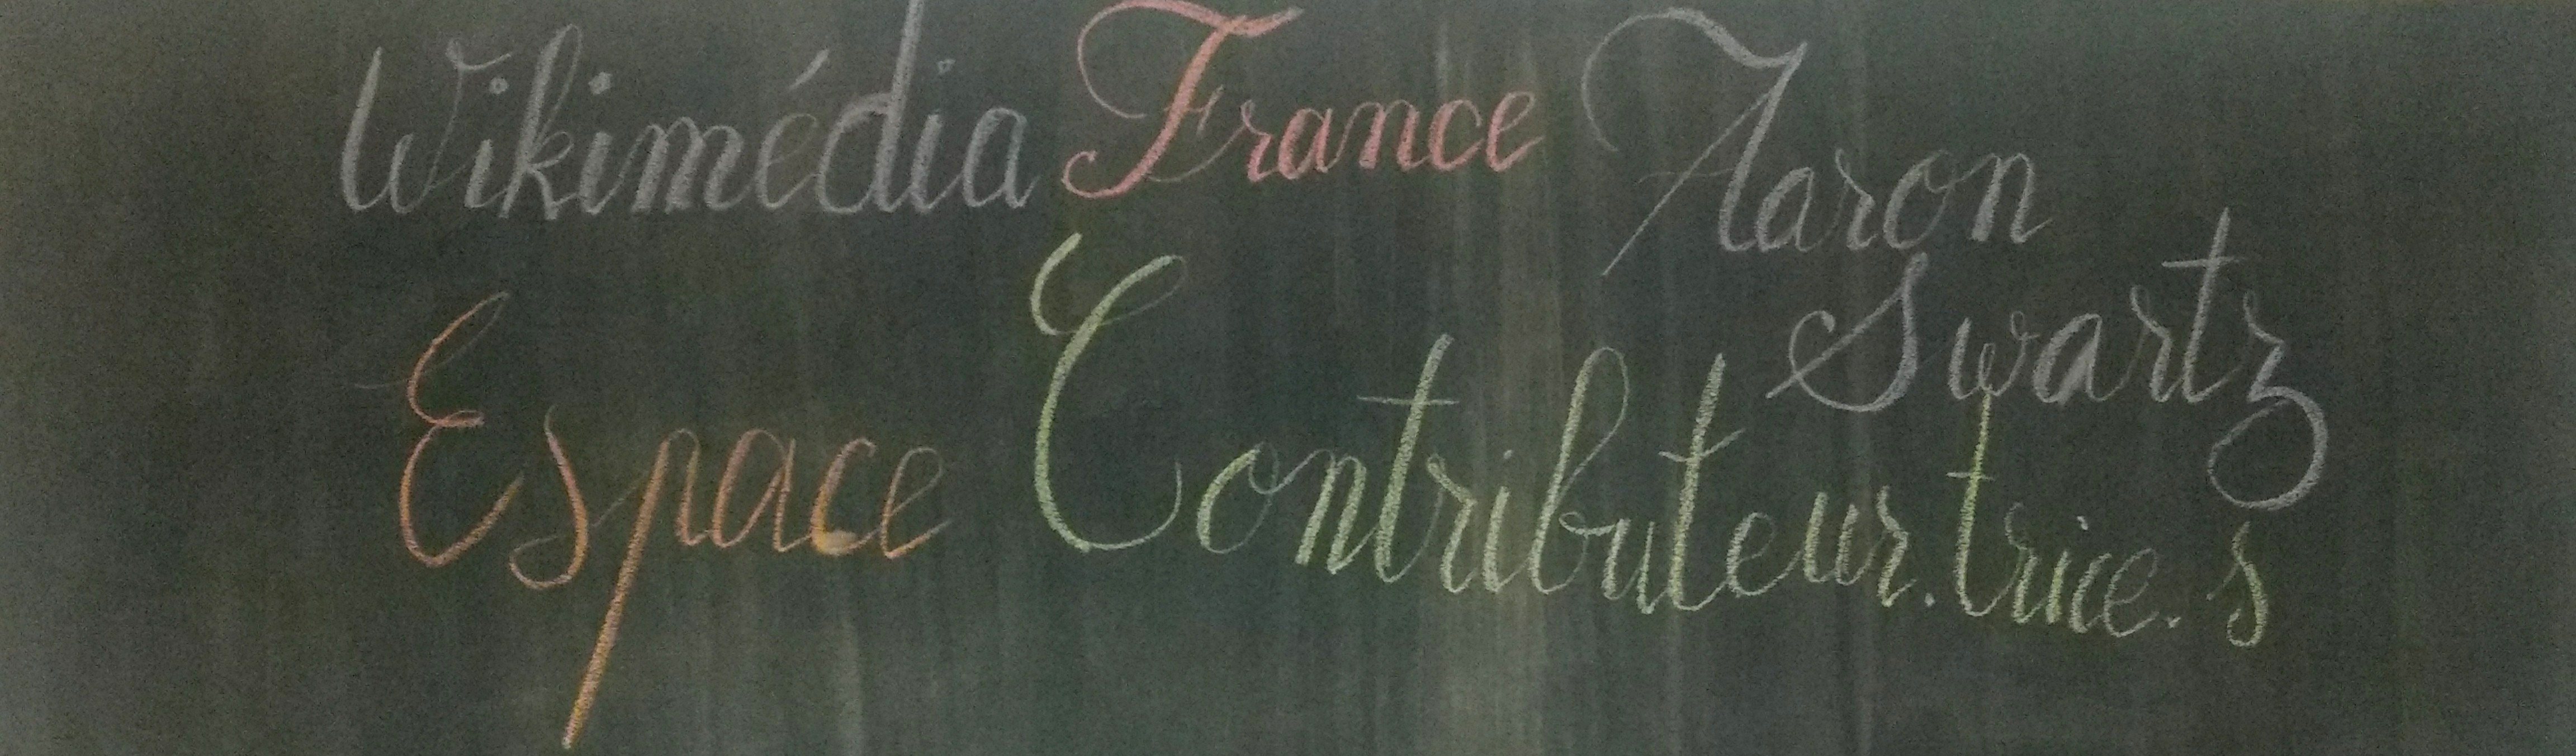 Lettrage à la craie sur un tableau : "Wikimédia France - Aaron Swartz - Espace Contributeur⋅trice⋅s